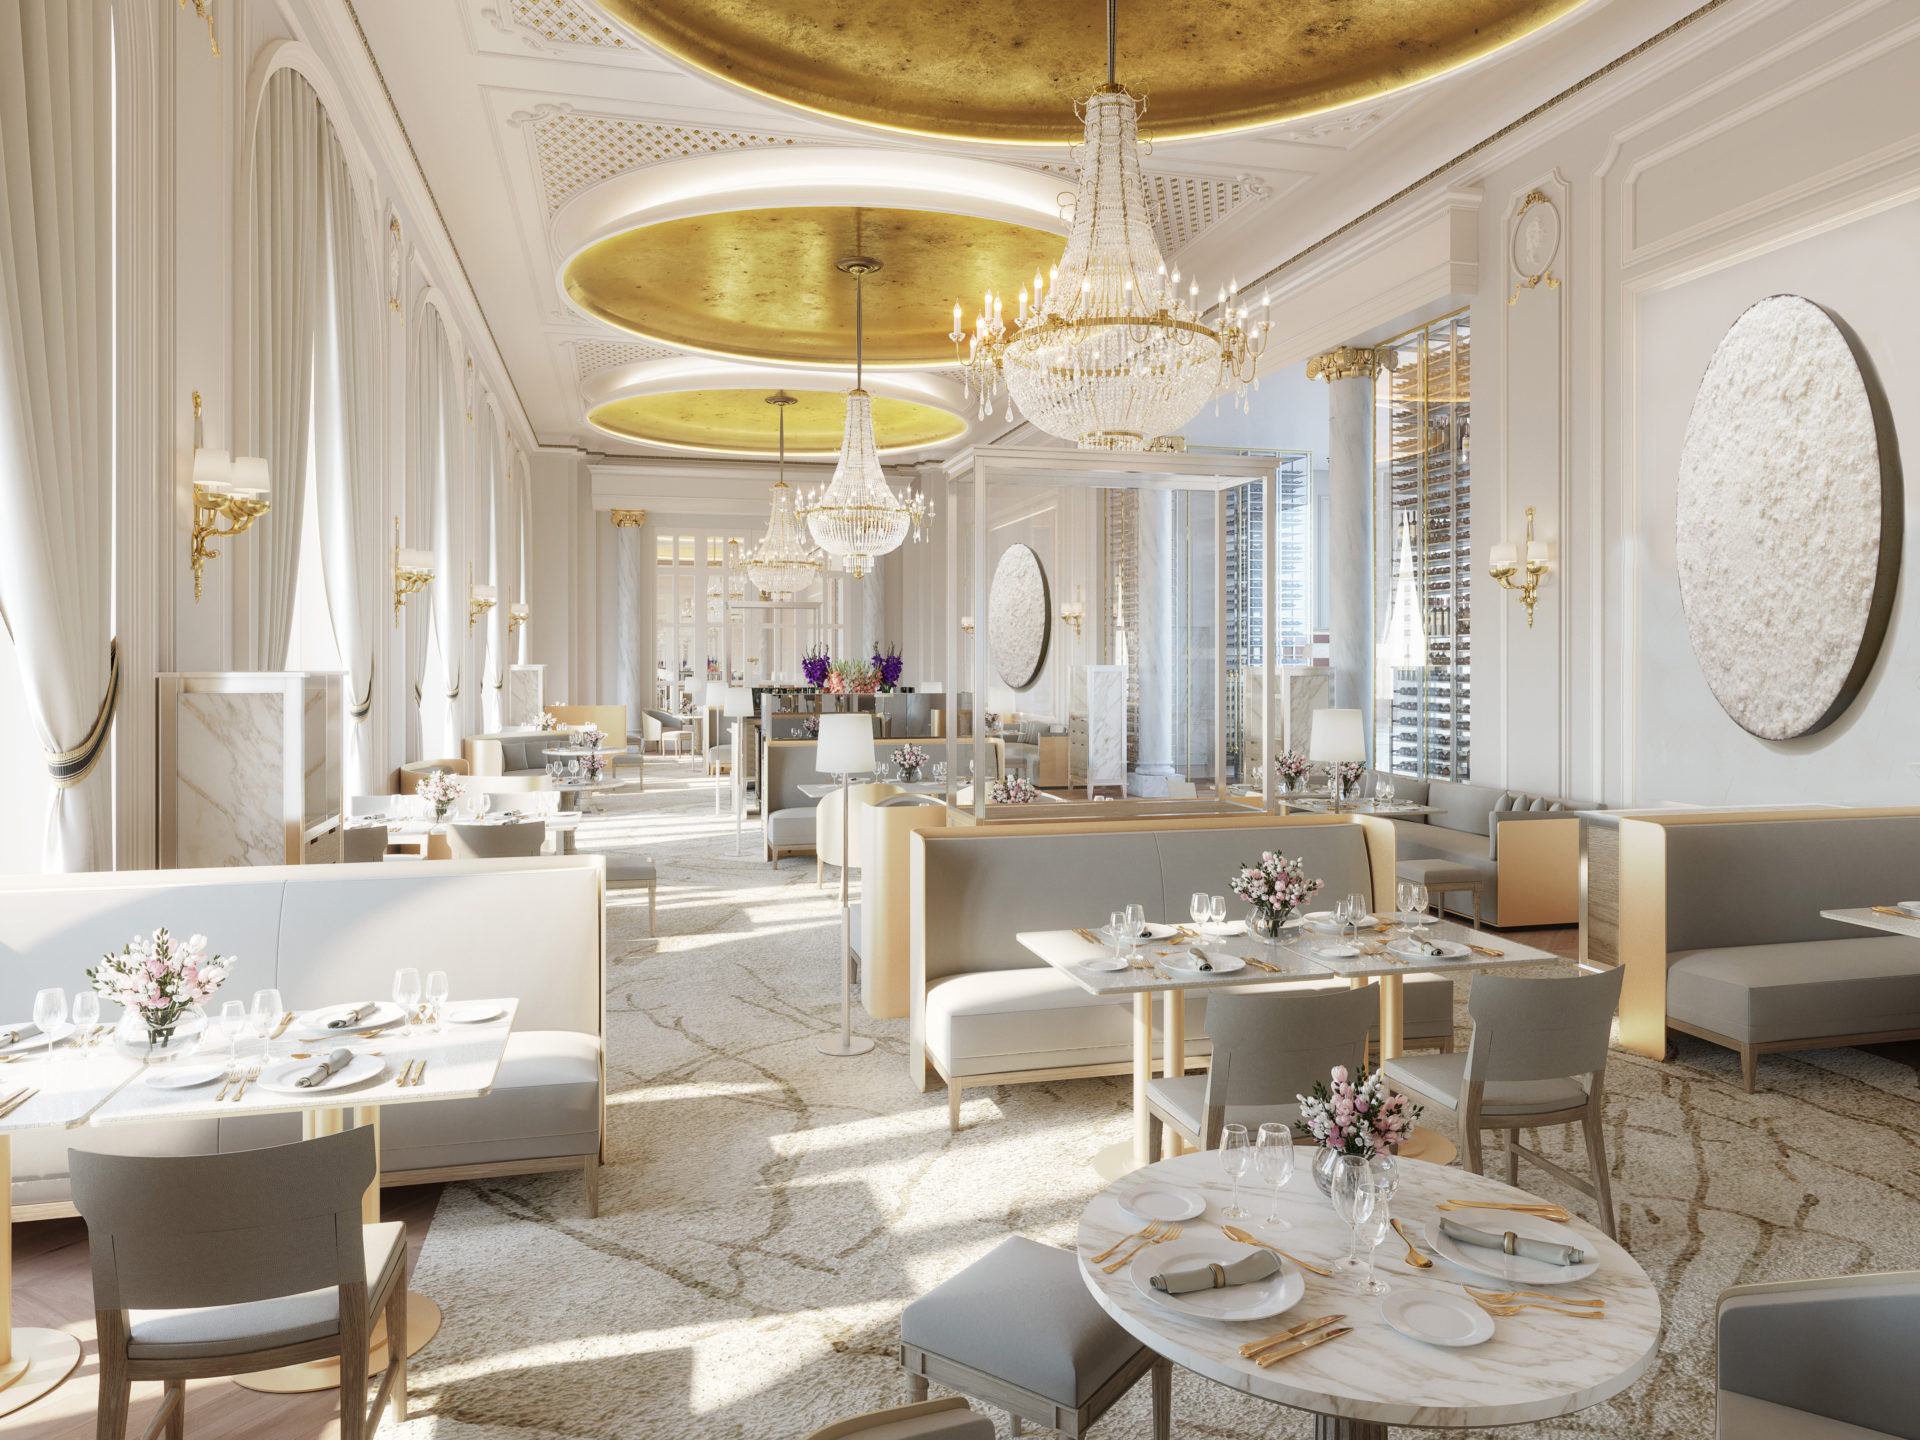 El restaurante Deessa será el epicentro gastronómico del hotel Mandarin Oriental Ritz.